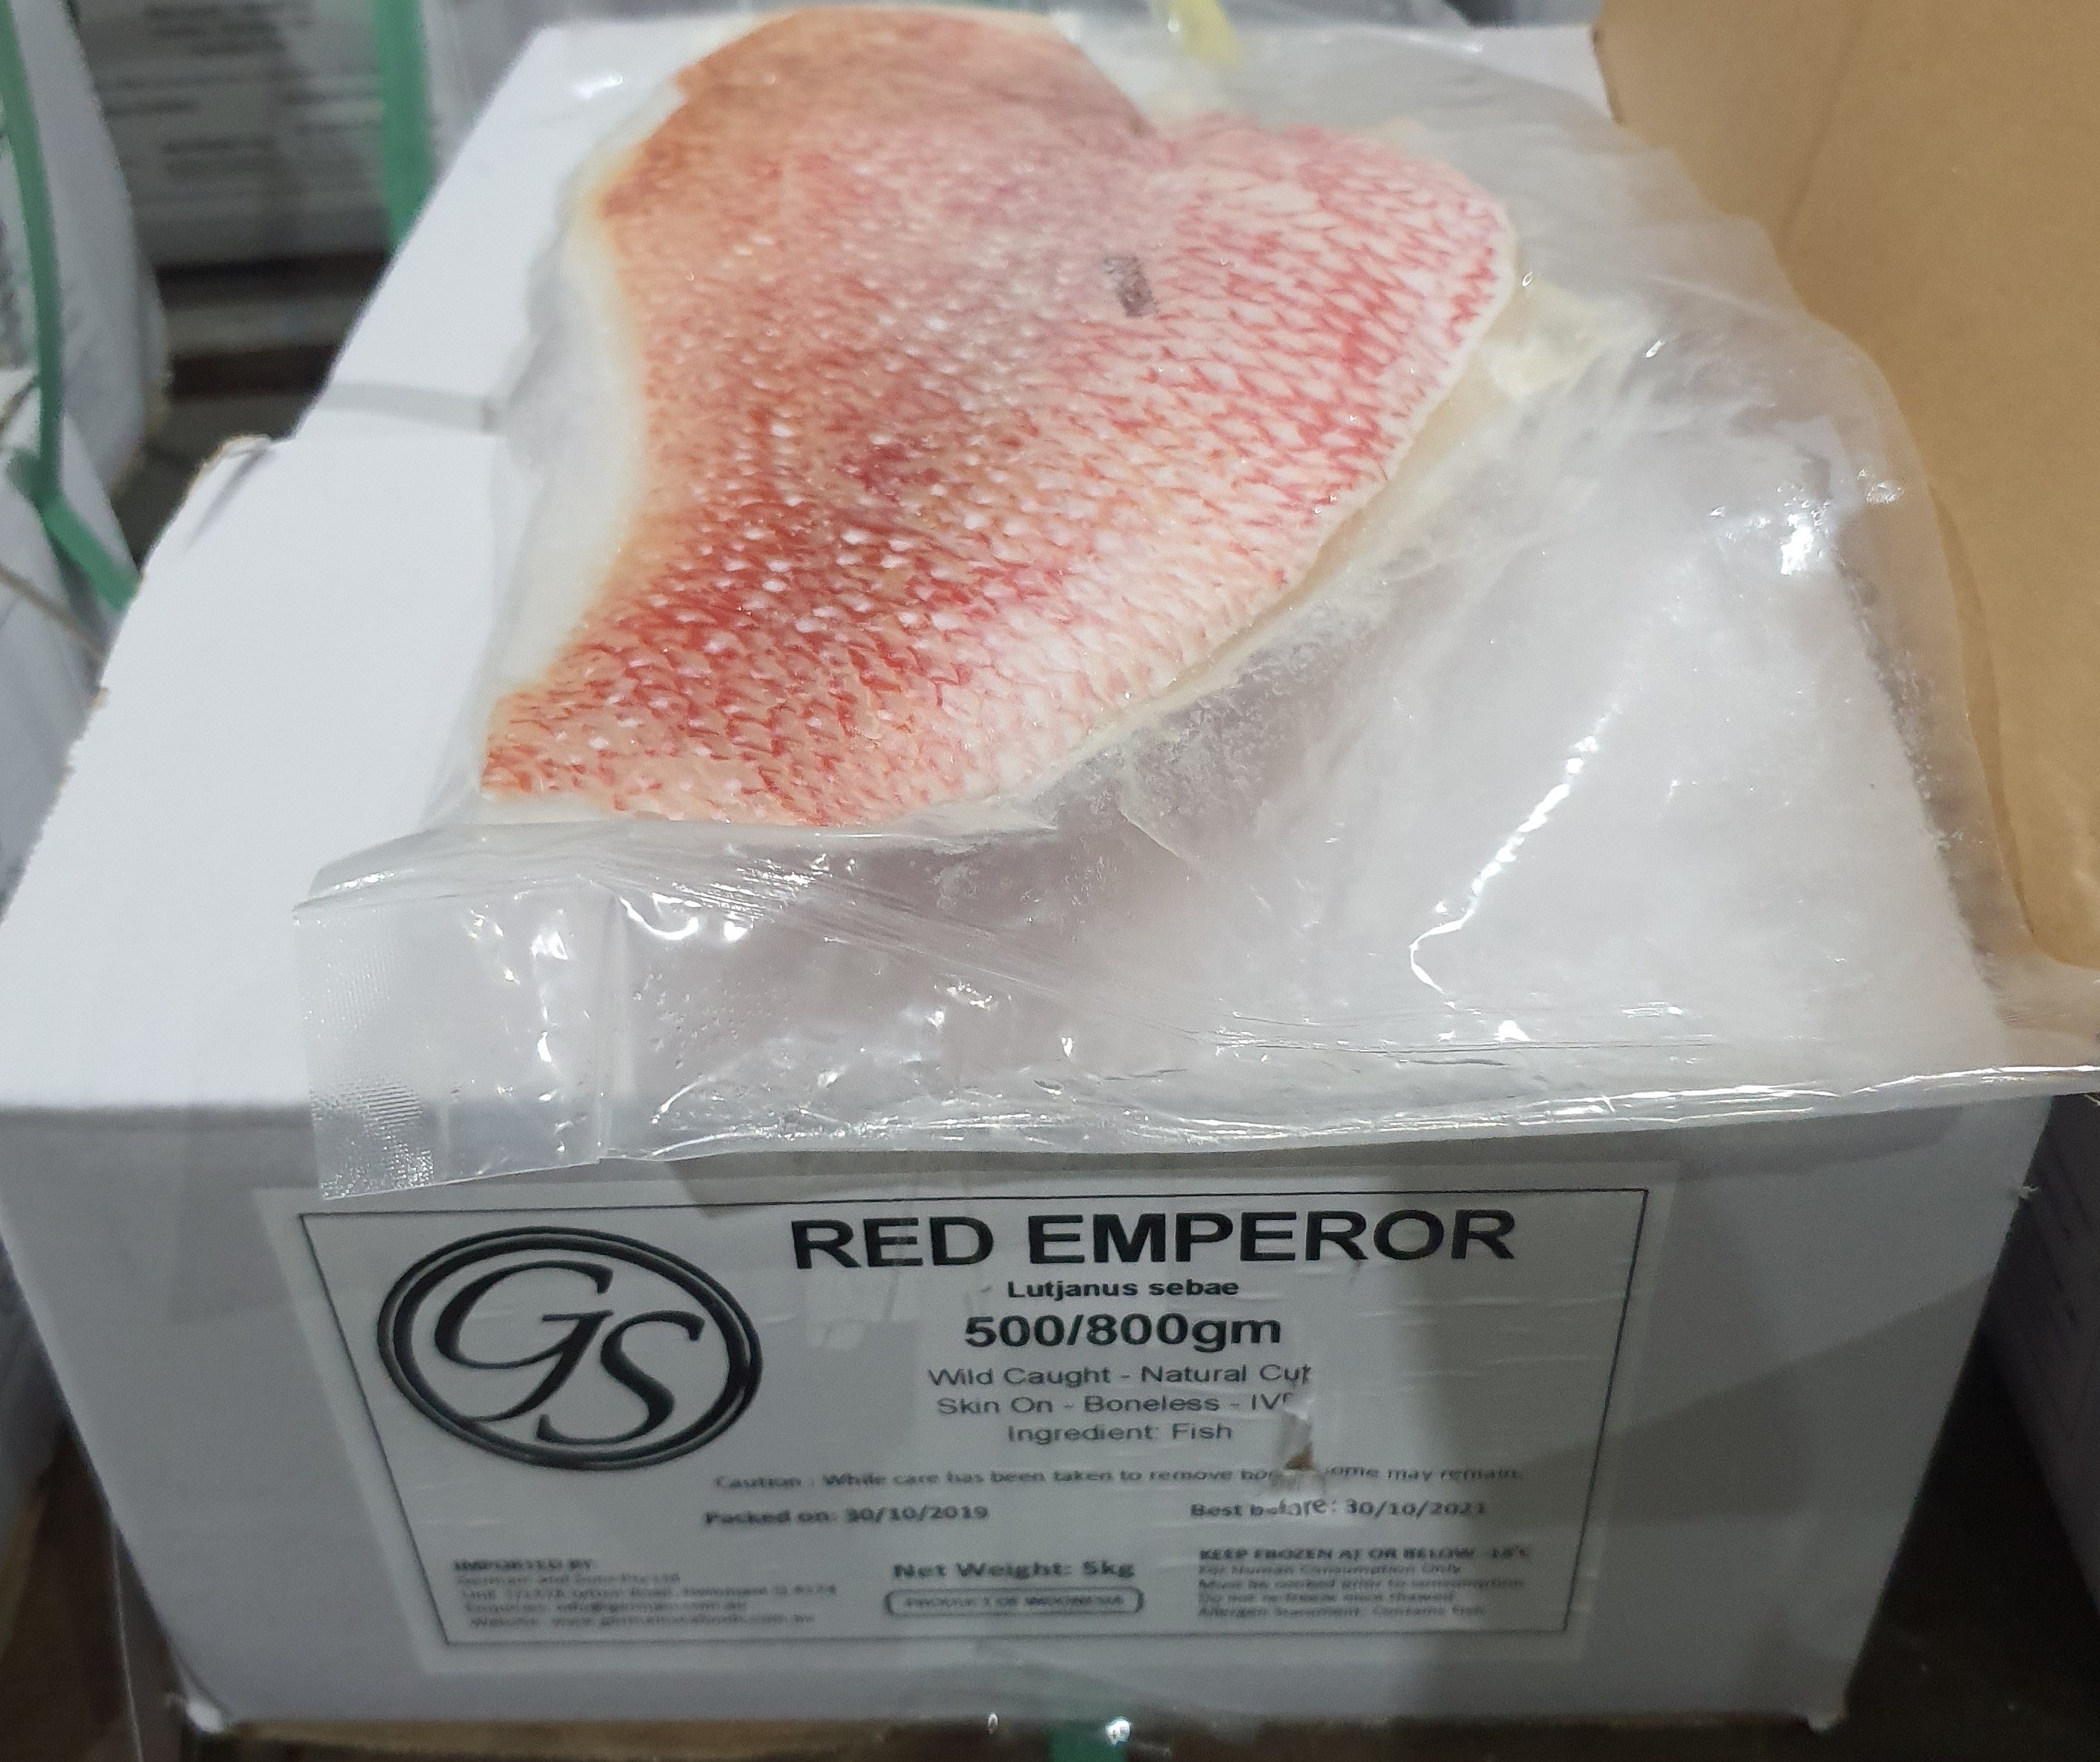 Red Emperor Fillets Skin On IVP 5kg Ctn